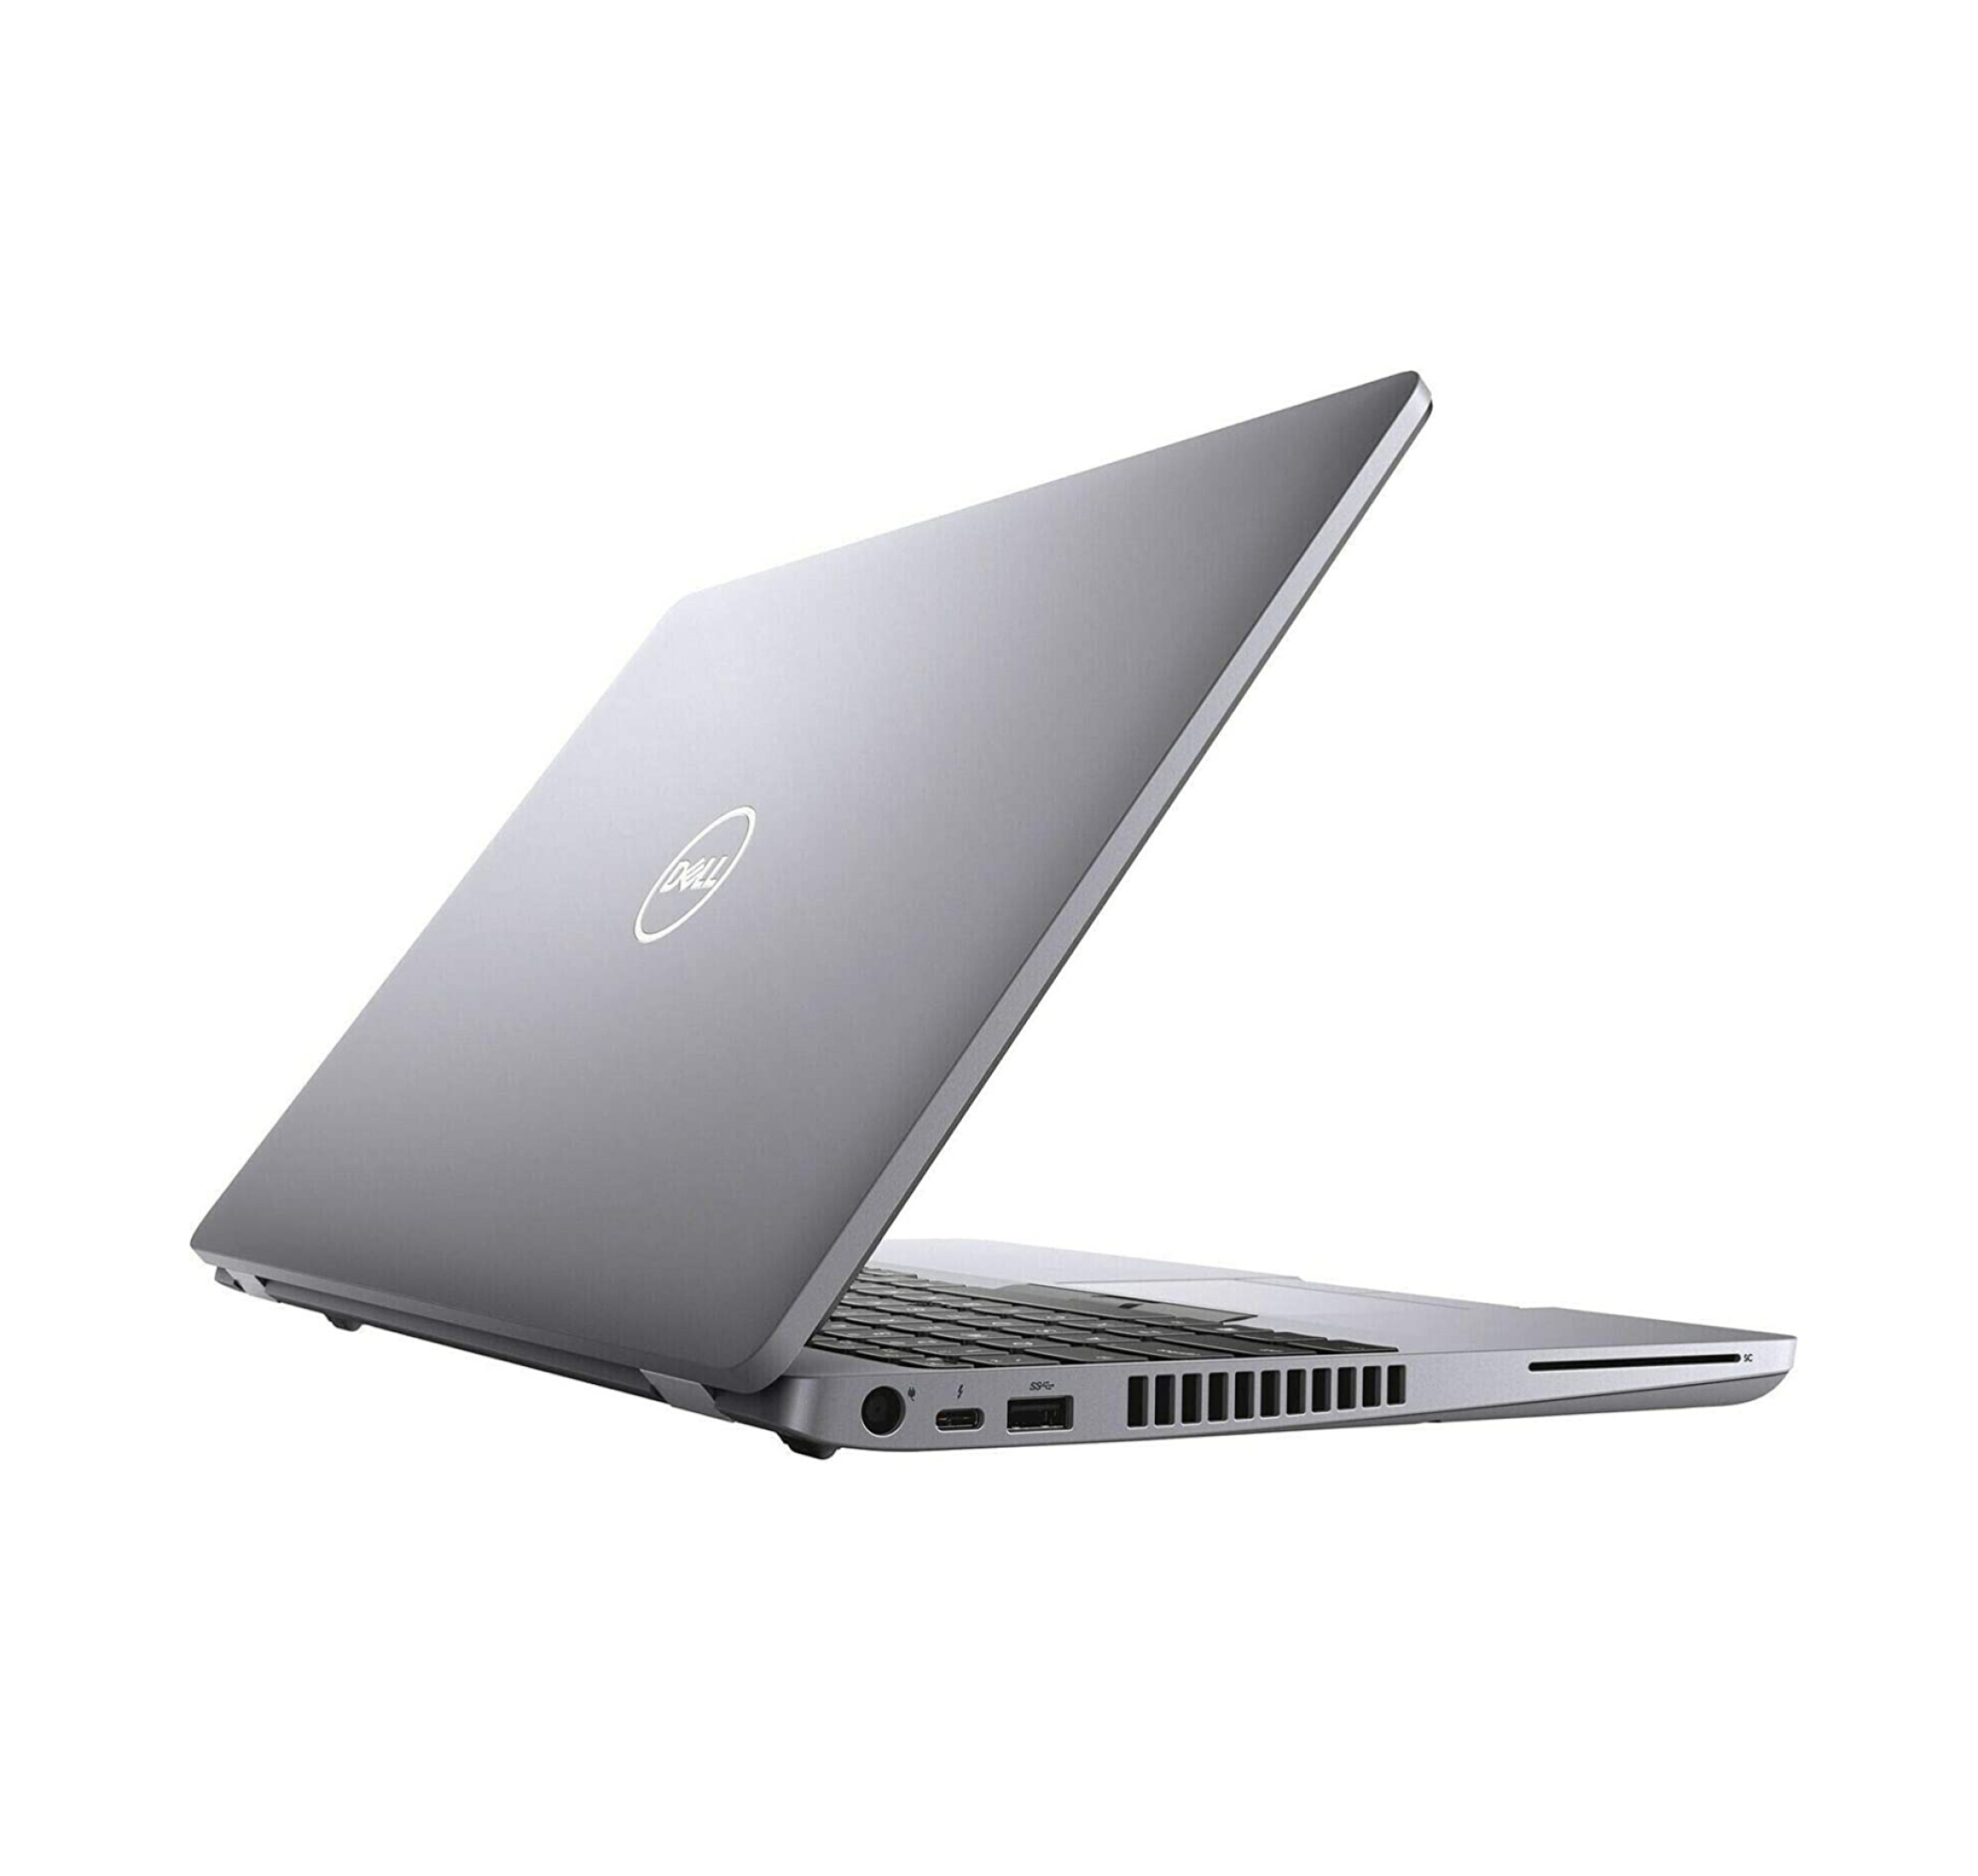  خرید و قیمت Dell Precision 3550 Core i7 10810U | لاکچری لپتاپ 